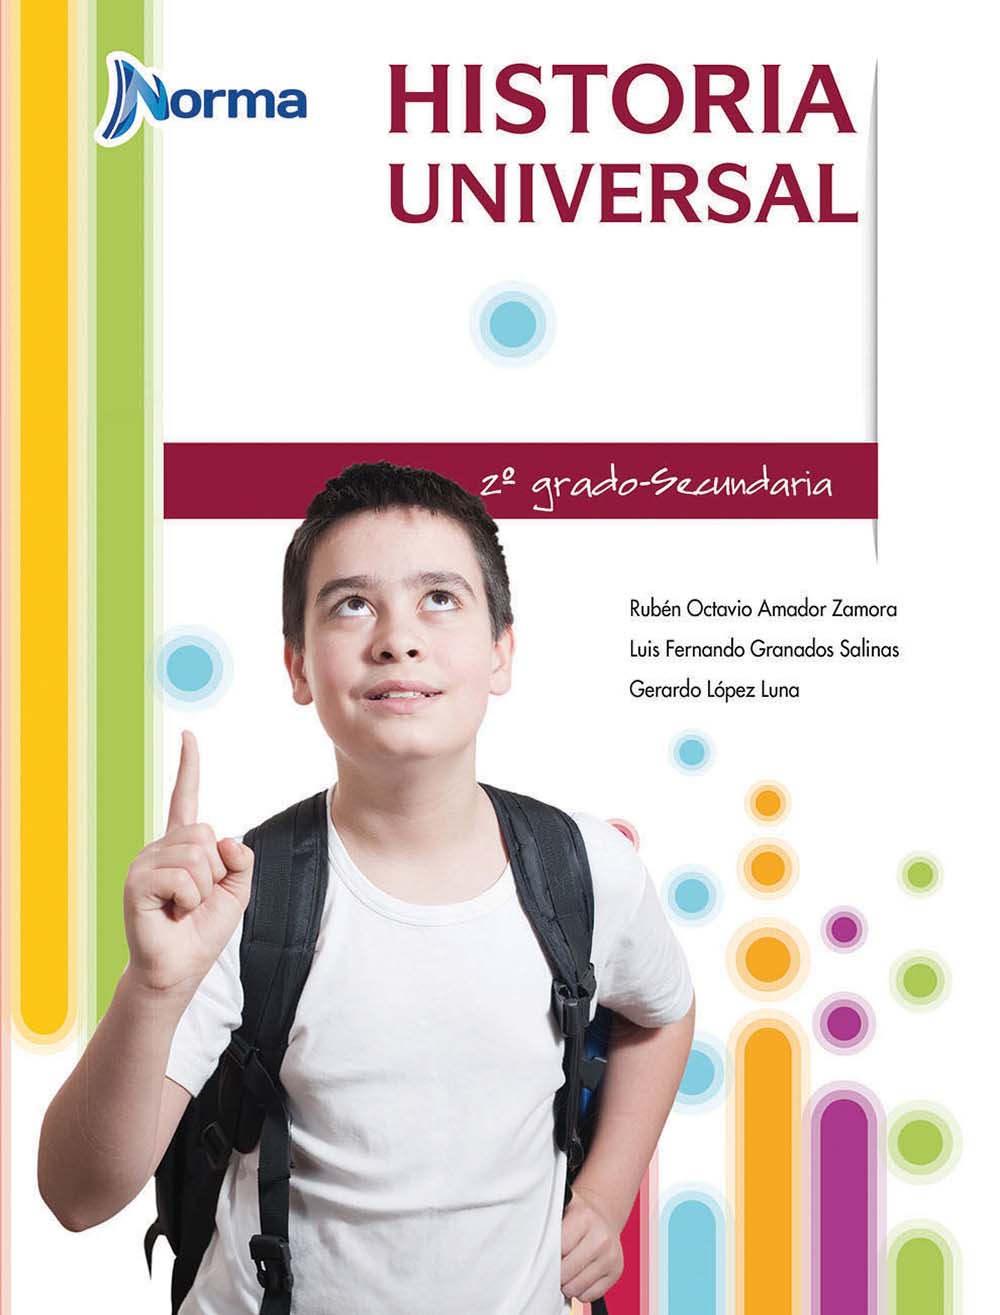 Historia universal, Editorial: Norma Ediciones, Nivel: Secundaria, Grado: 2